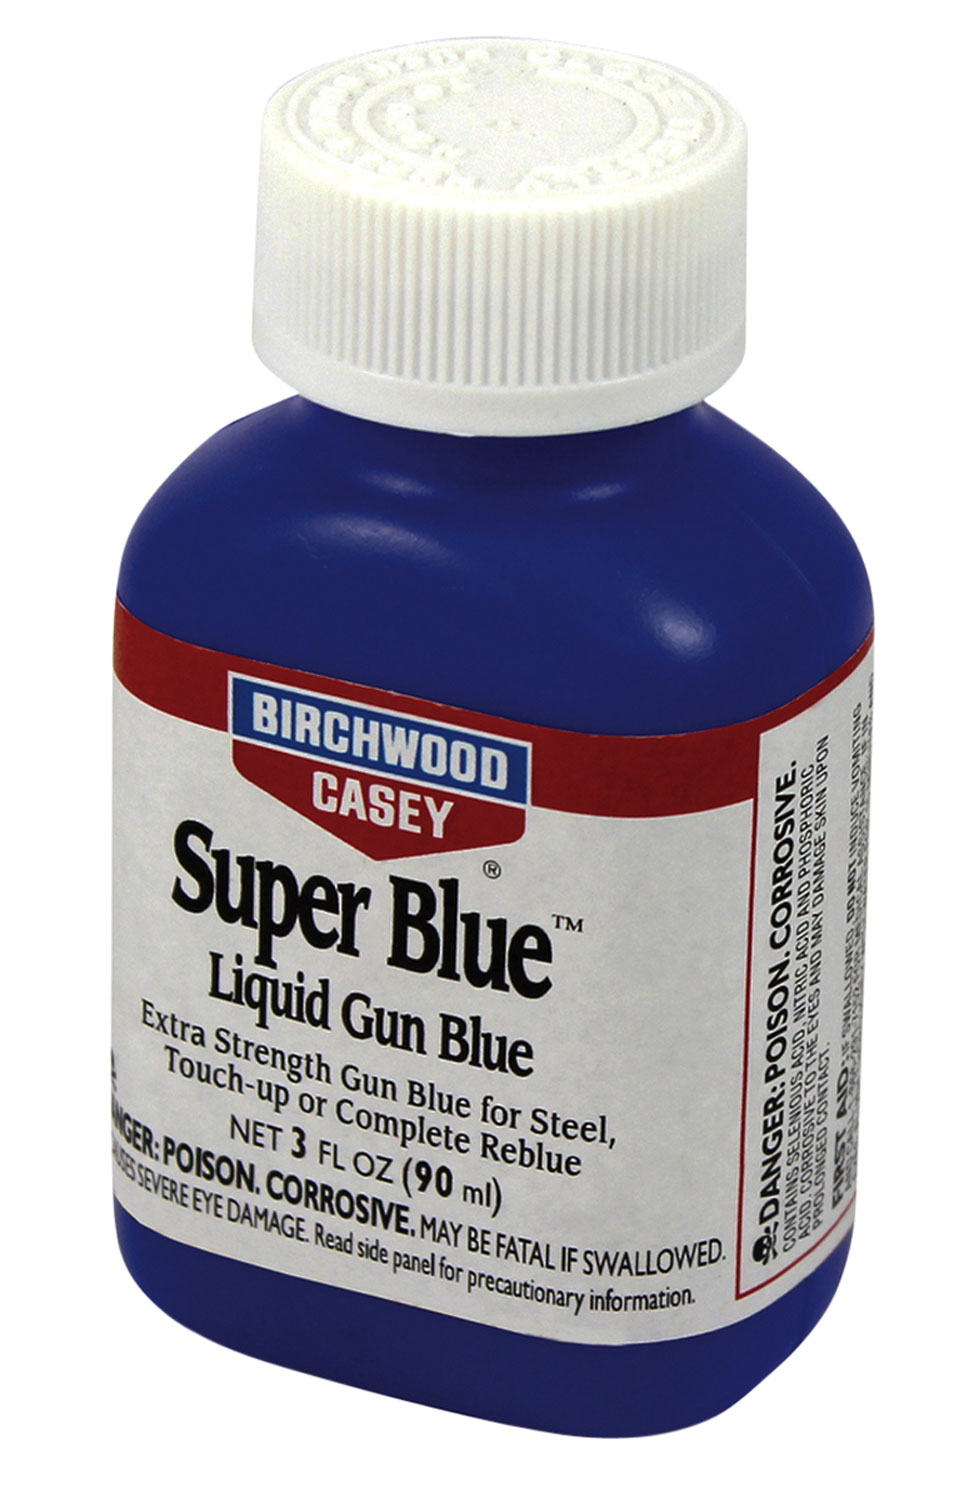 Birchwood Casey 13425 Super Blue Liquid Gun Blue 3 oz Bottle